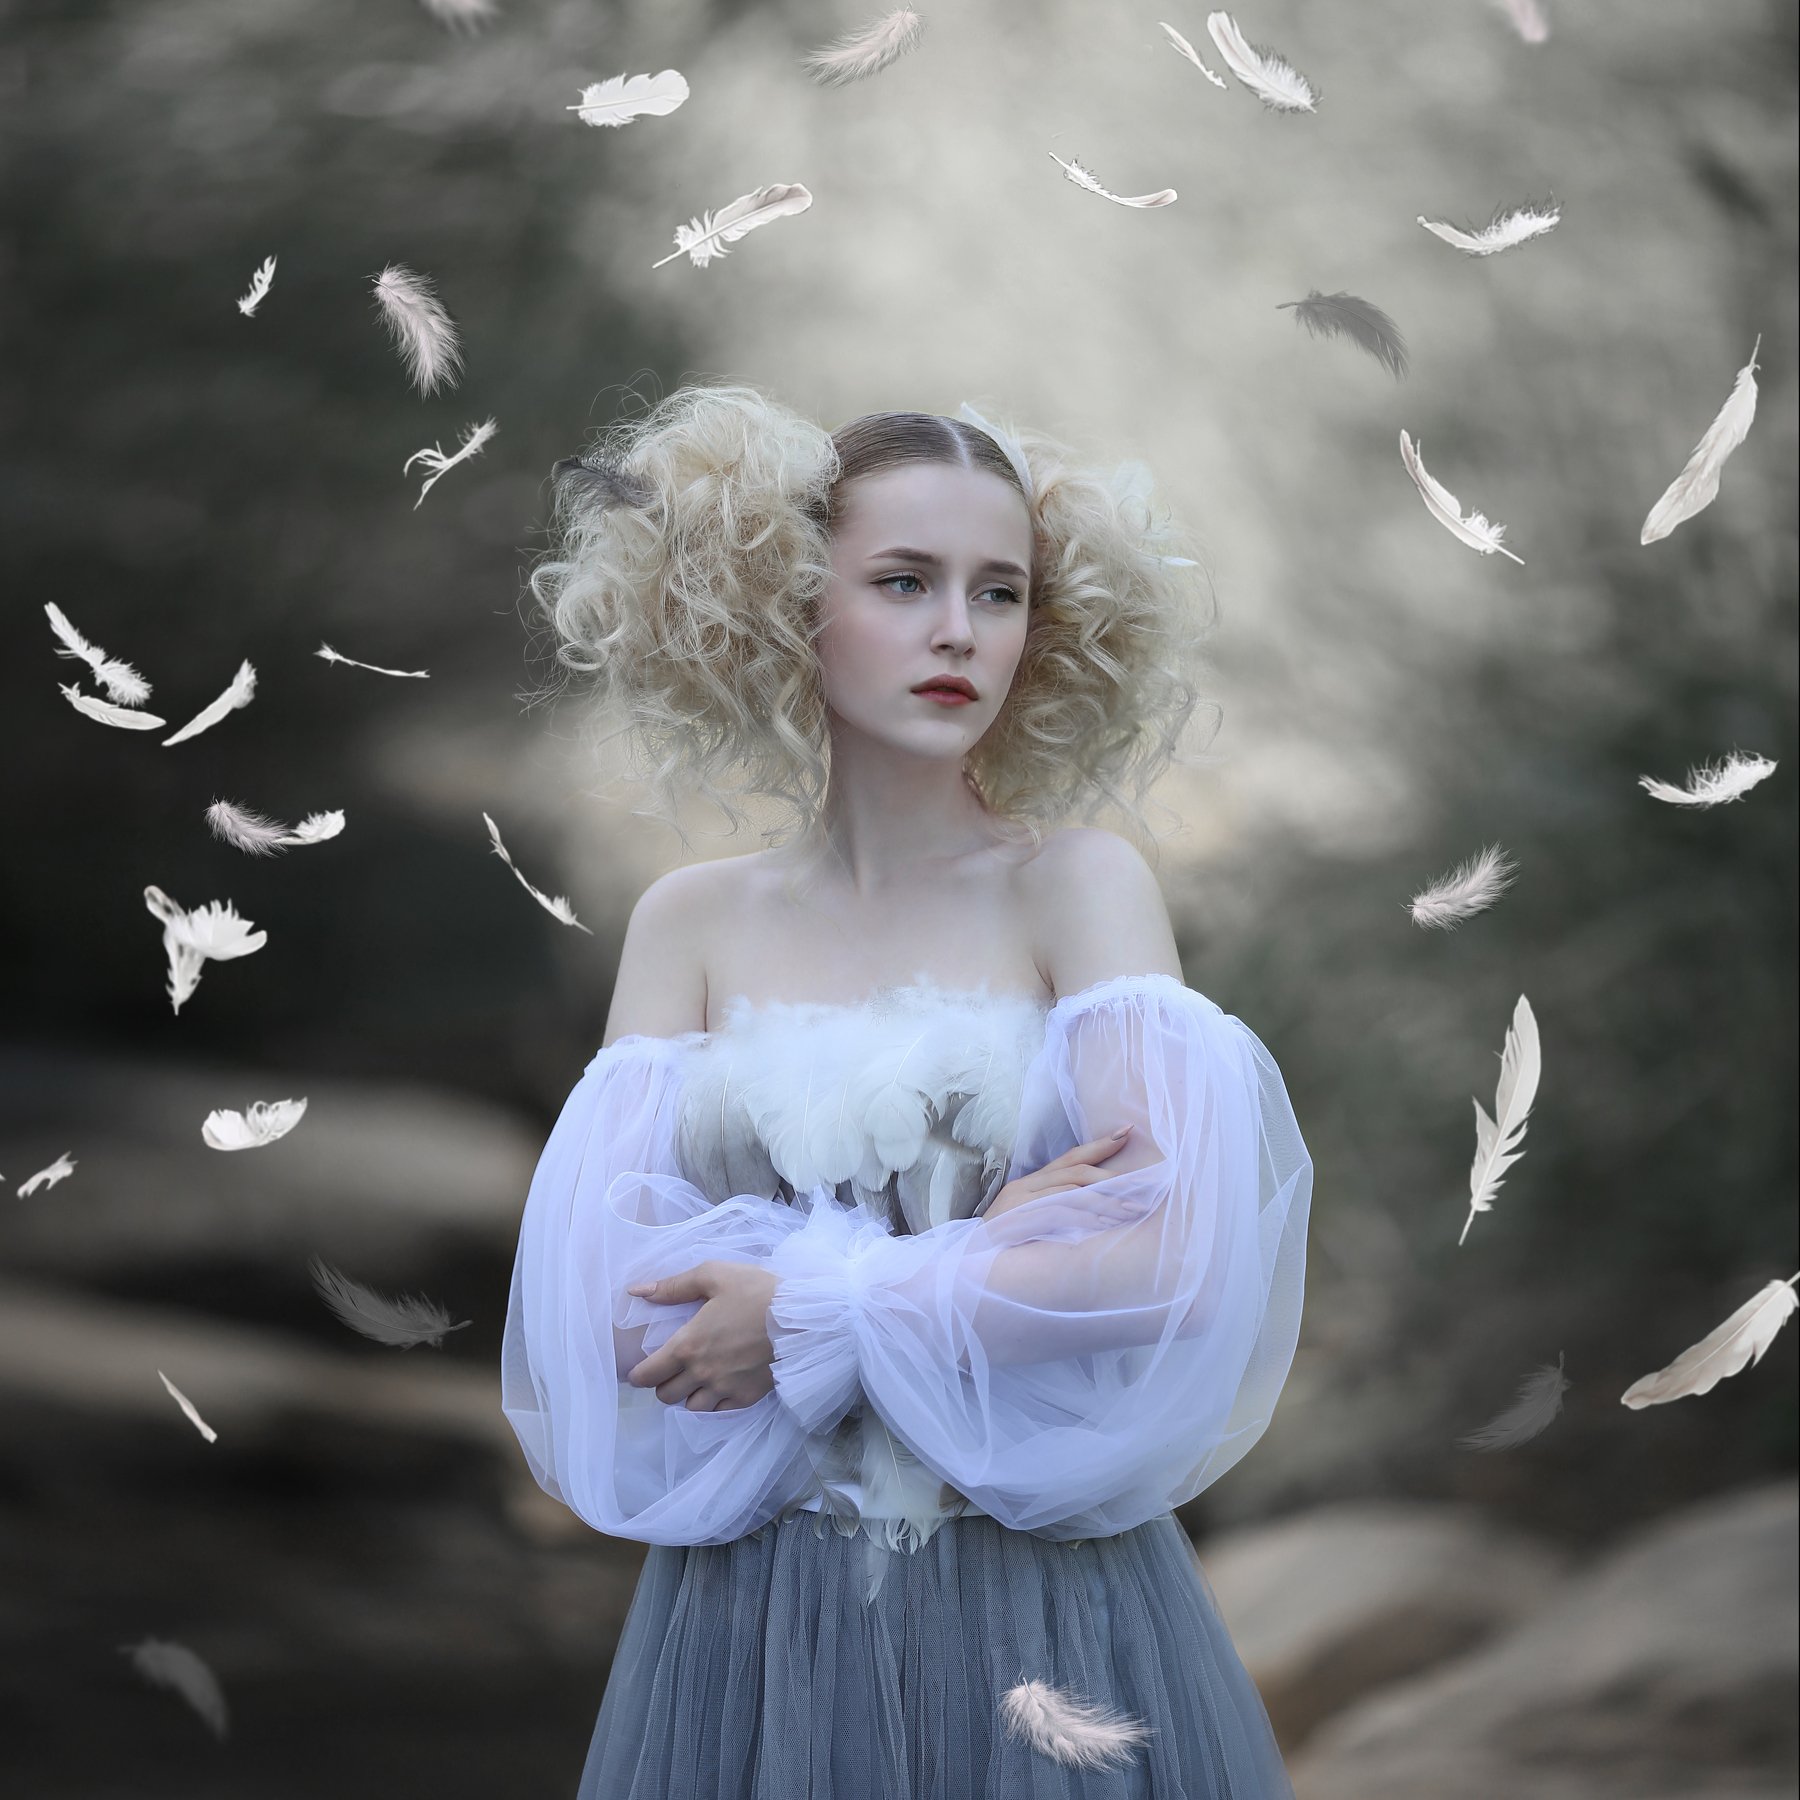 птичка, перья, воздушное фото, bird, feathers, красивая девушка, магическое фото, магия, Ирина Голубятникова